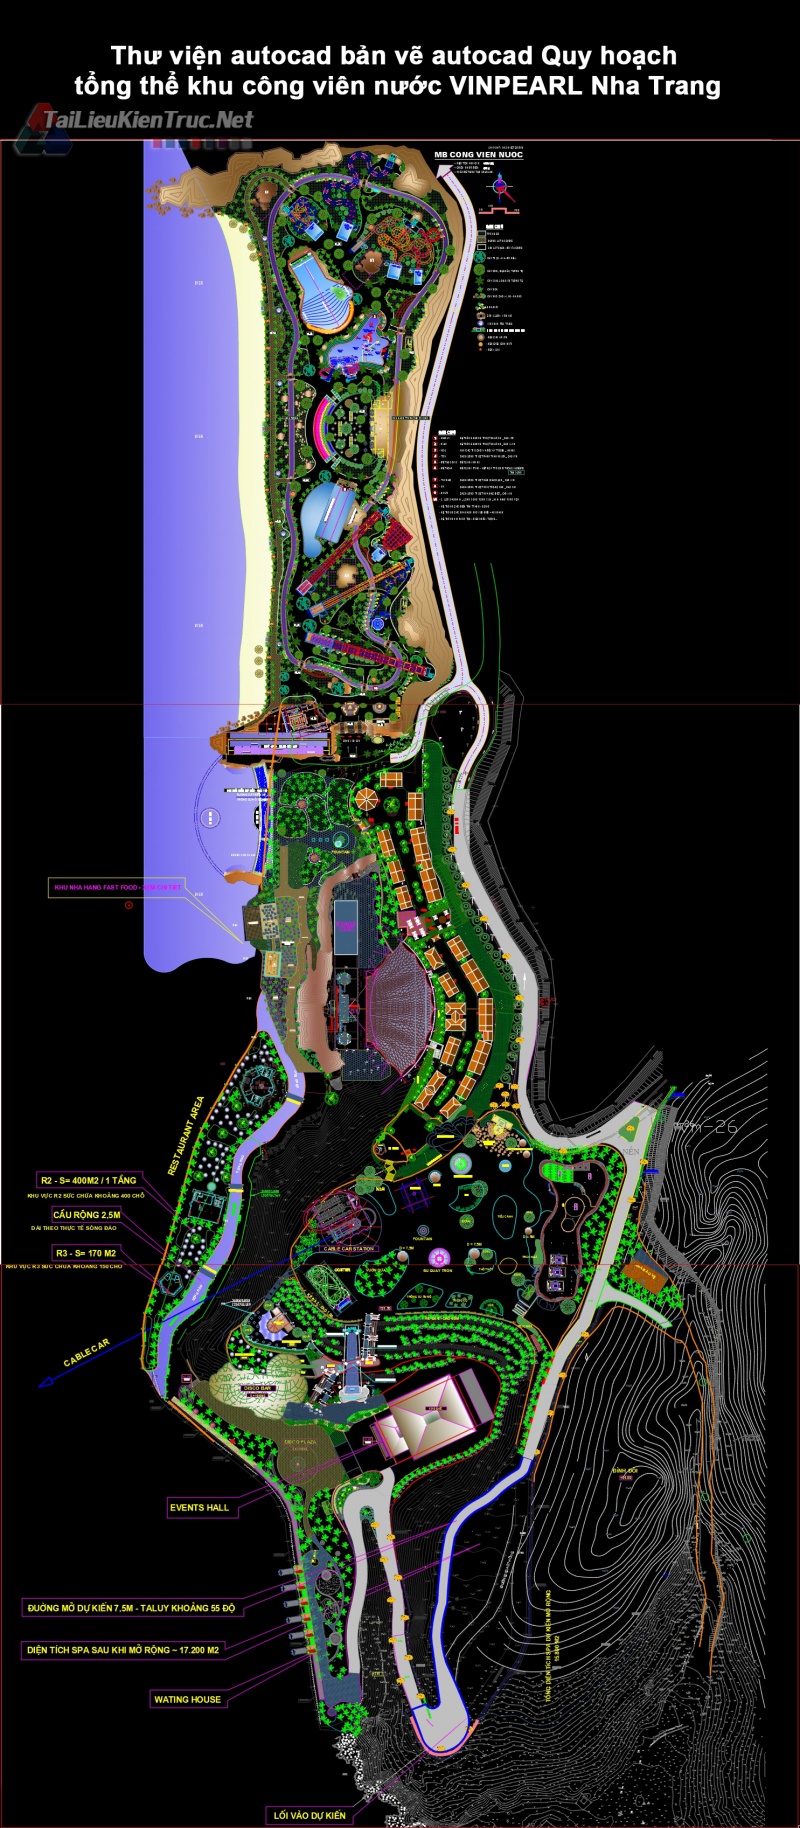 Thư viện autocad bản vẽ autocad Quy hoạch tổng thể khu công viên nước VINPEARL Nha Trang